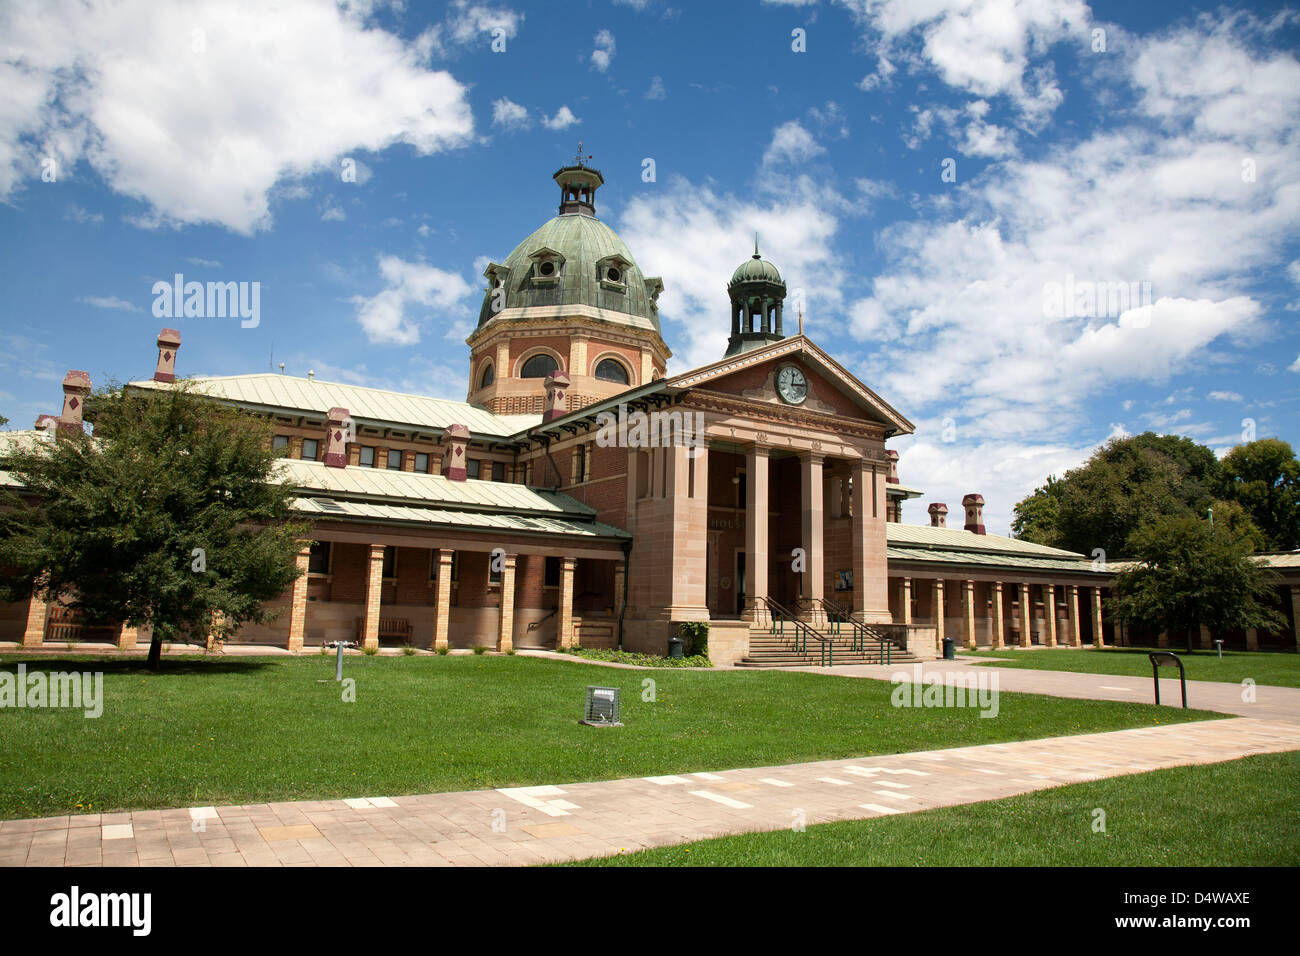 Historischen neoklassische Architektur der Gerichtsgebäude Gebäude Bathurst New South Wales Australien Stockfoto